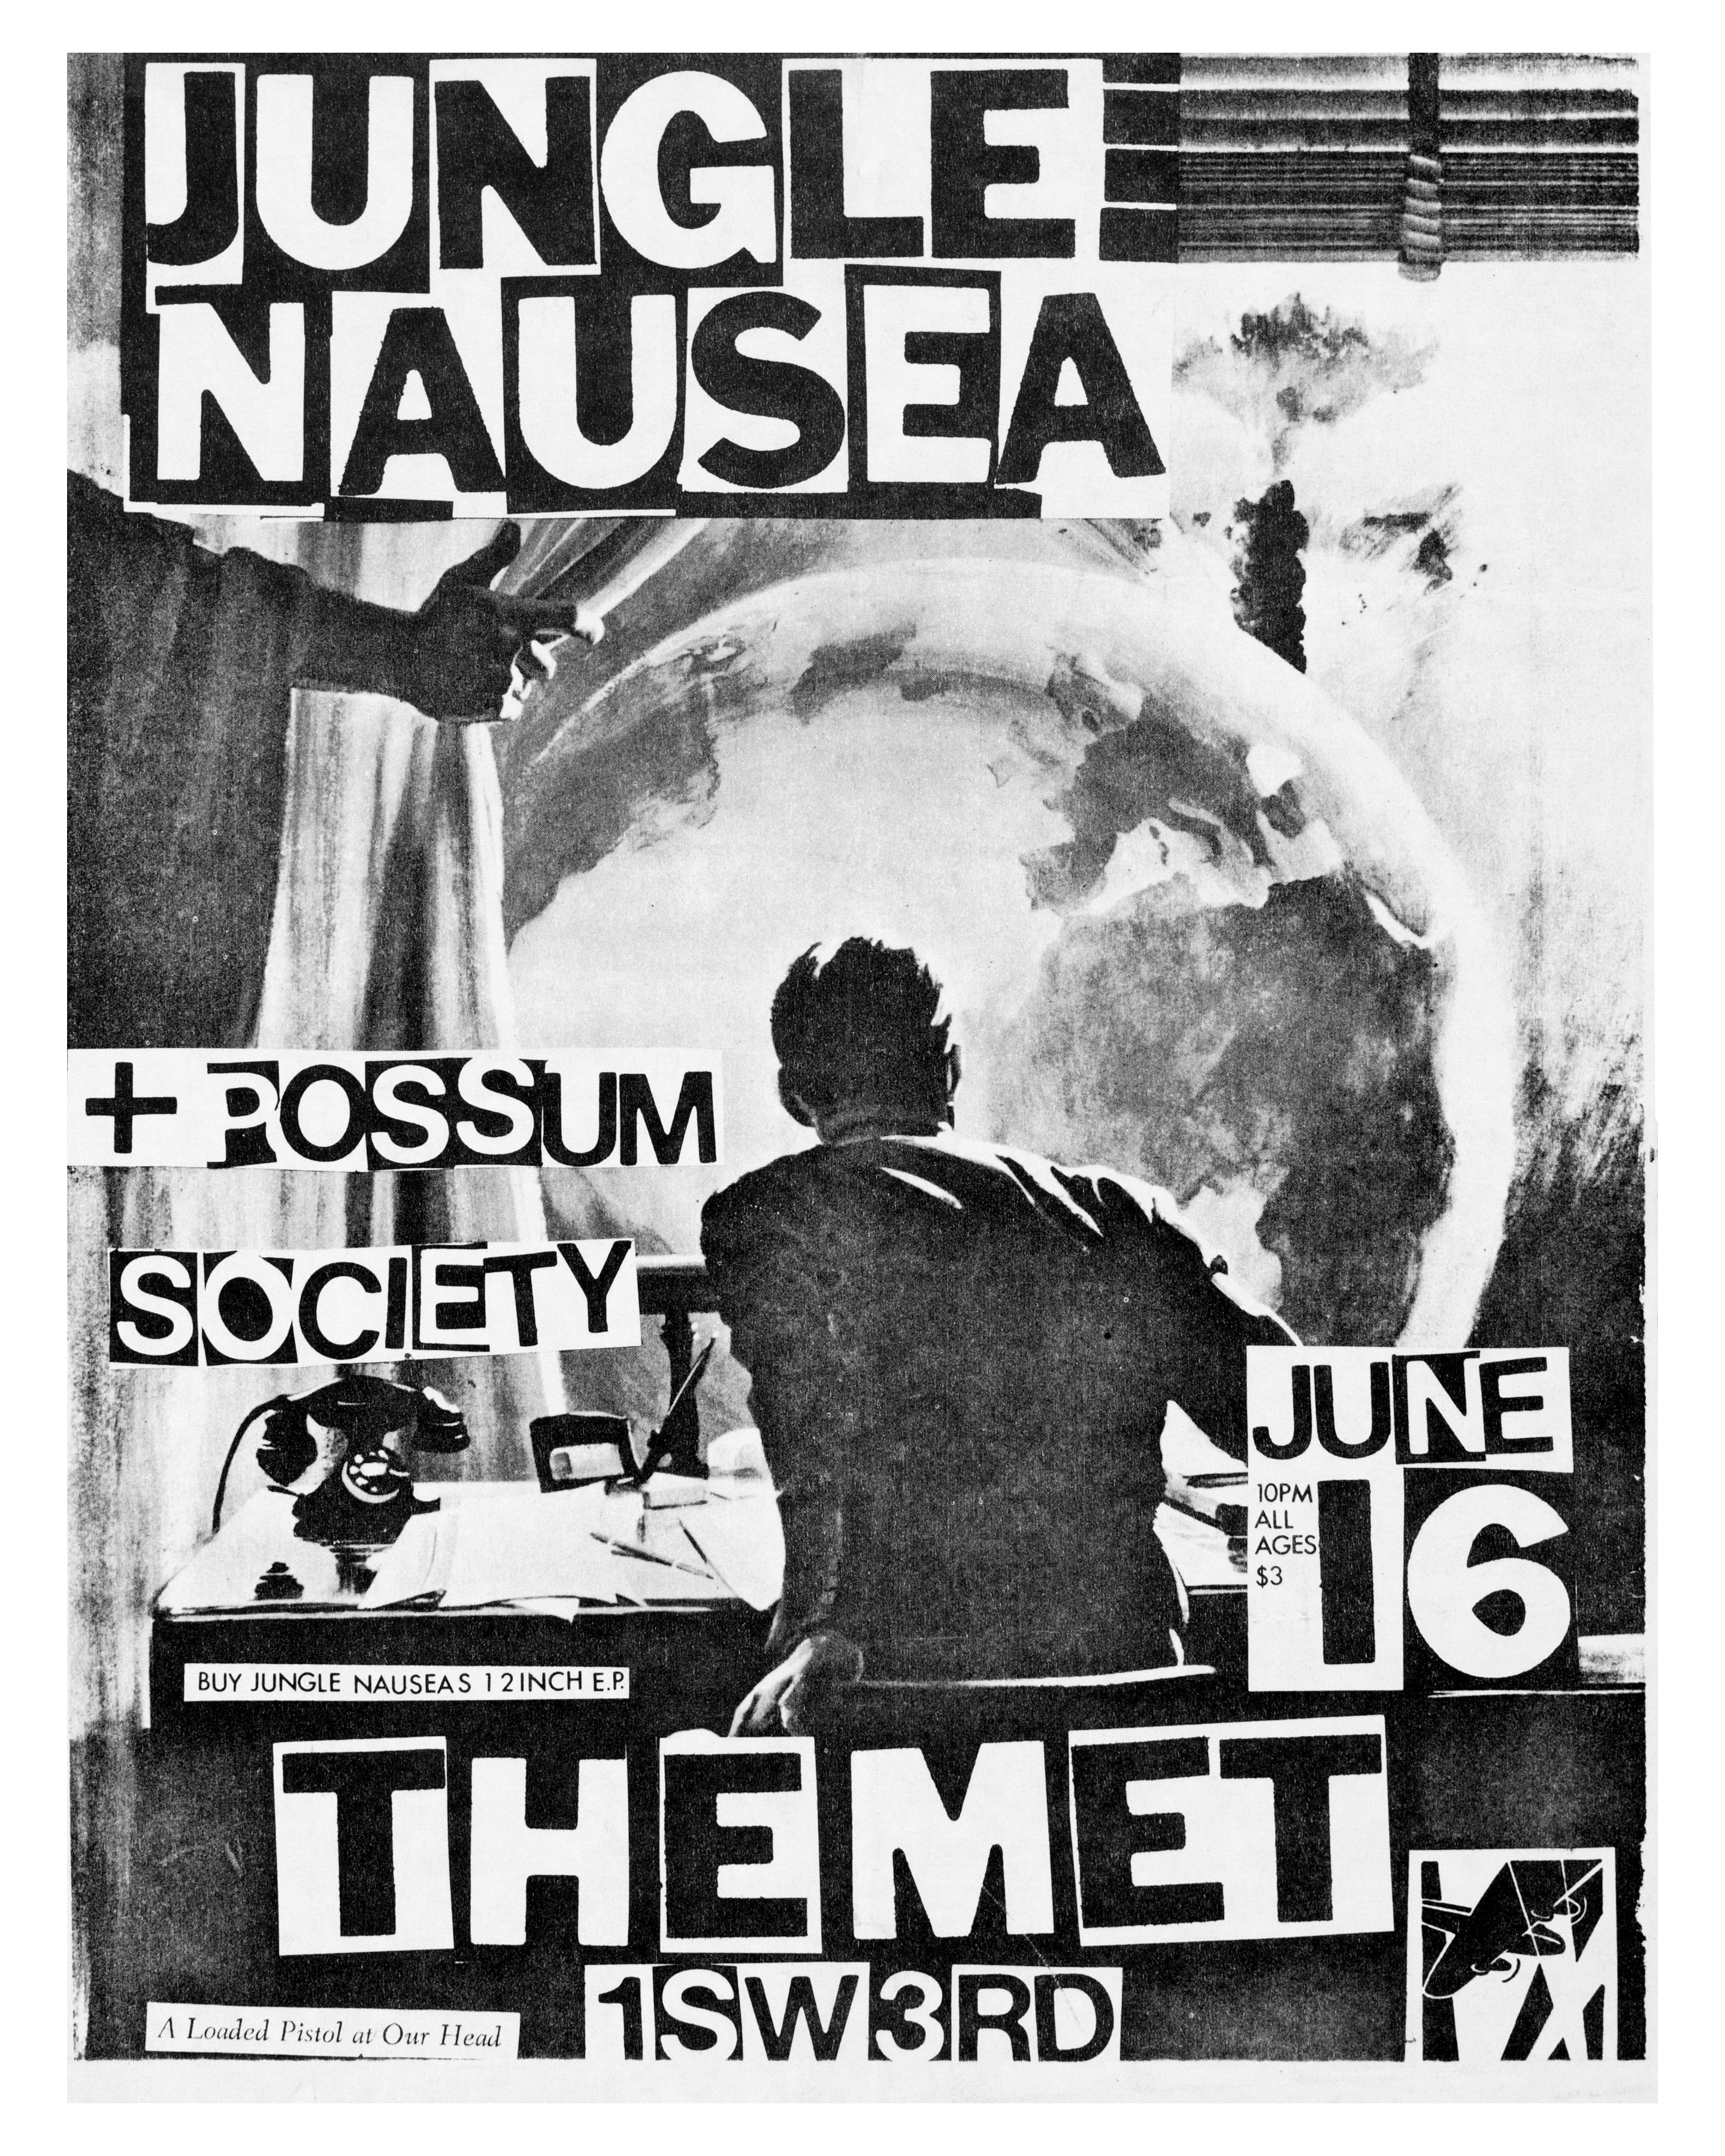 MXP-45.9 Jungle Nausea 1982 Metropolis (the Met)  Jun 16 Concert Poster